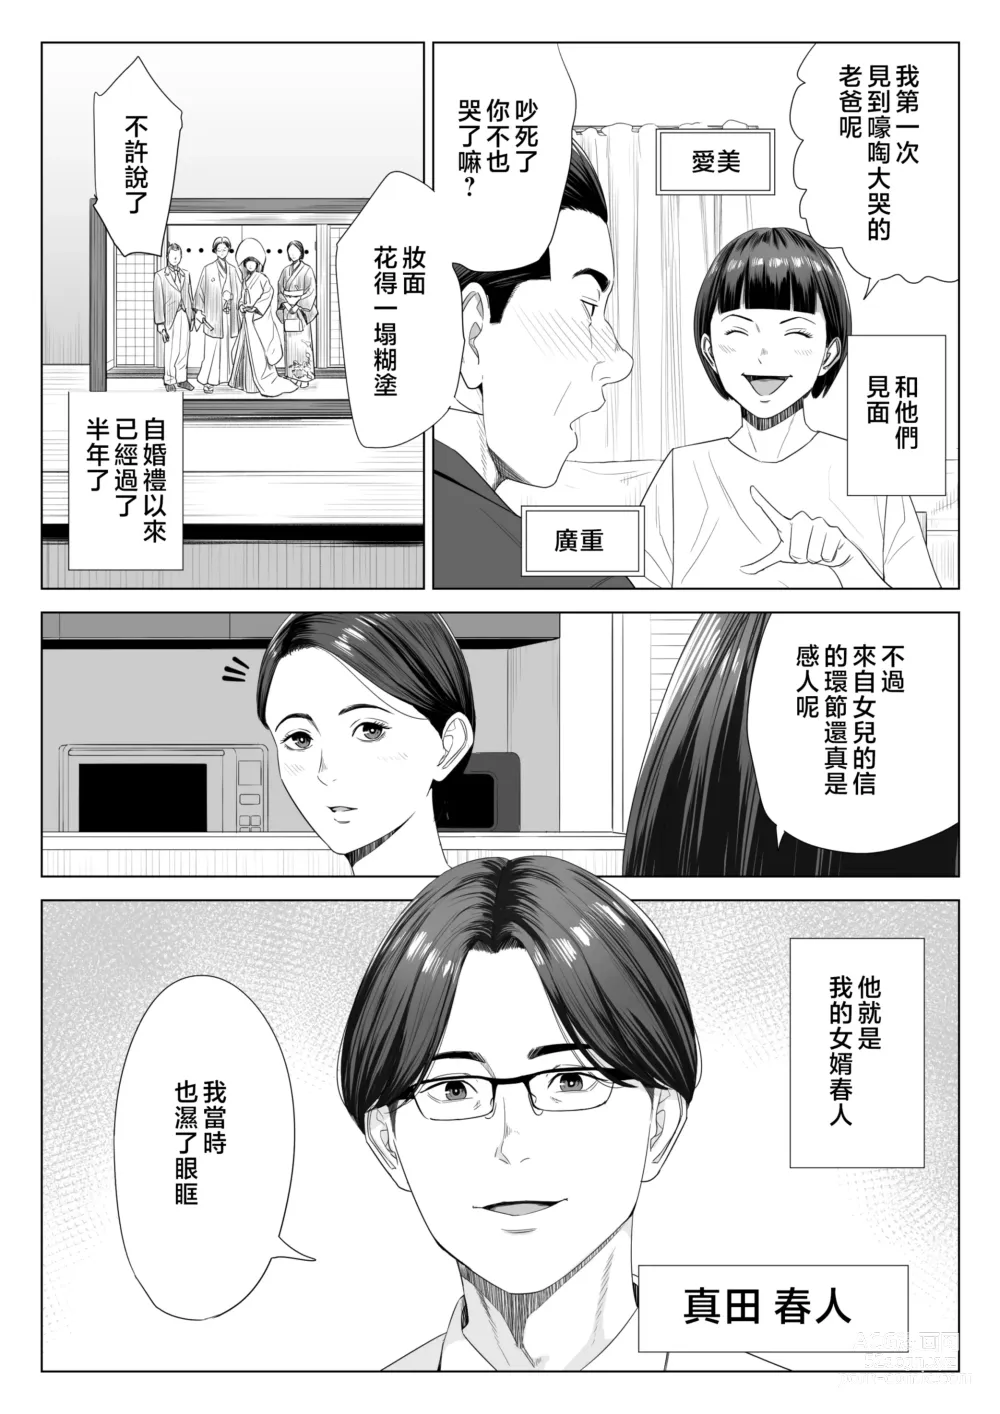 Page 3 of doujinshi Gibo no Tsukaeru Karada.